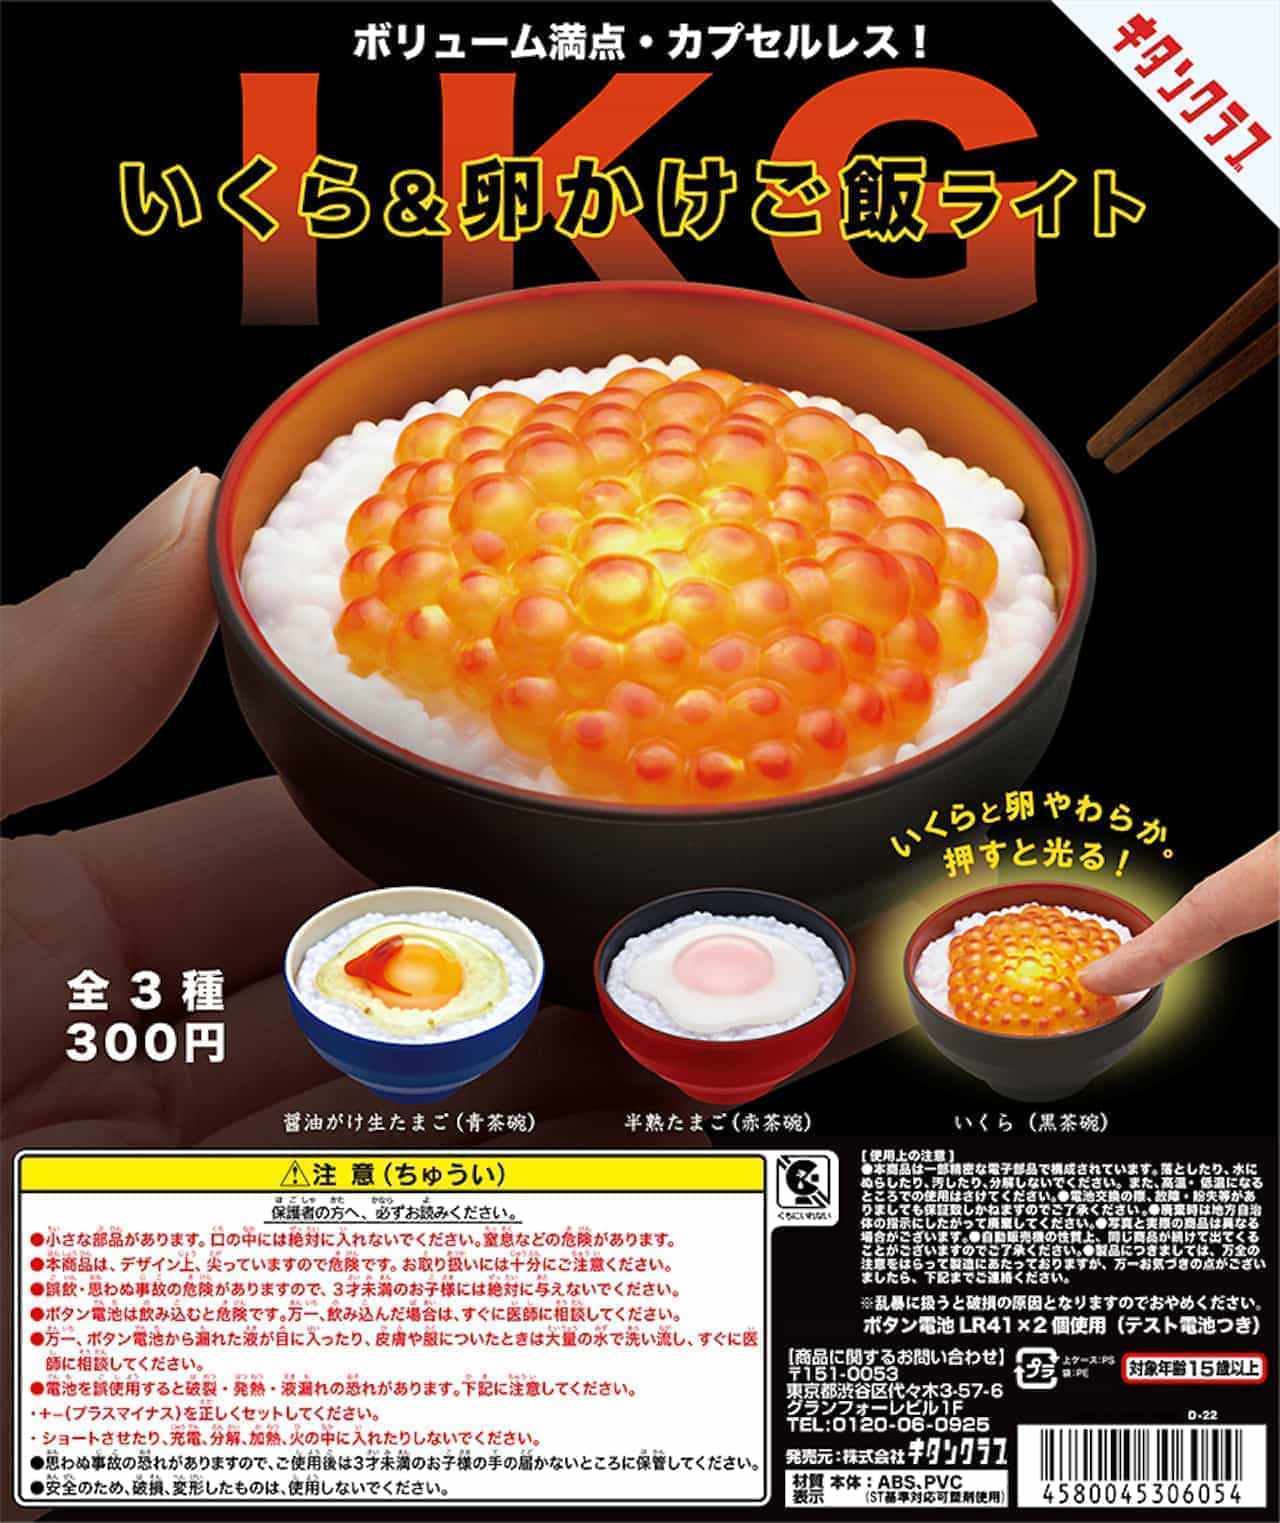 Kitanklab "Salmon Roe & Egg on Rice Light".